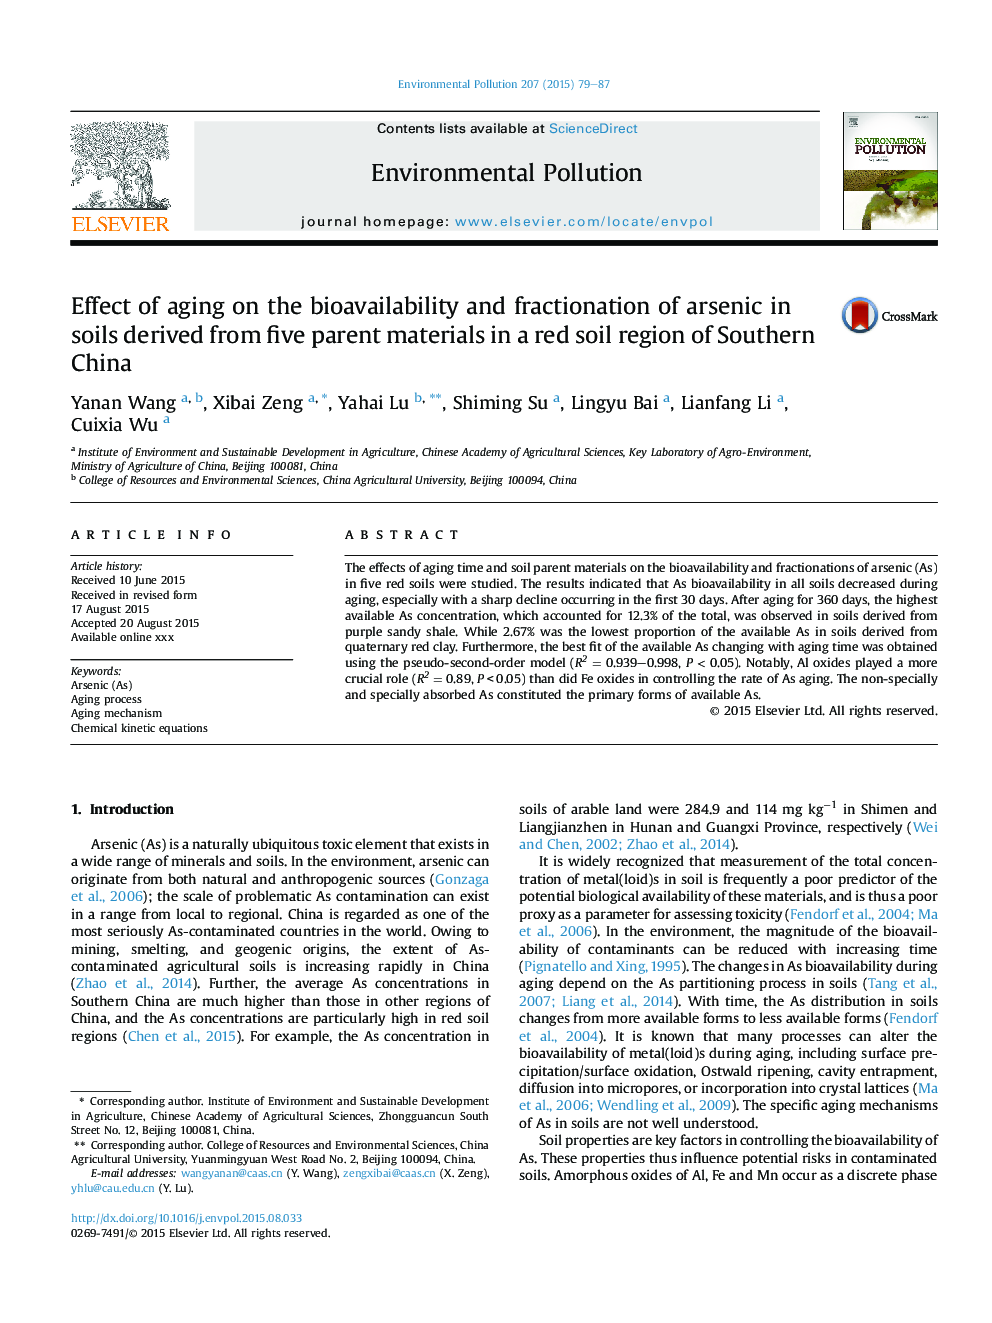 اثر پیری بر قابلیت زیستی و کسرکرد آرسنیک در خاک های حاصل از پنج ماده اصلی در یک منطقه خاکستری قرمز در جنوب چین 